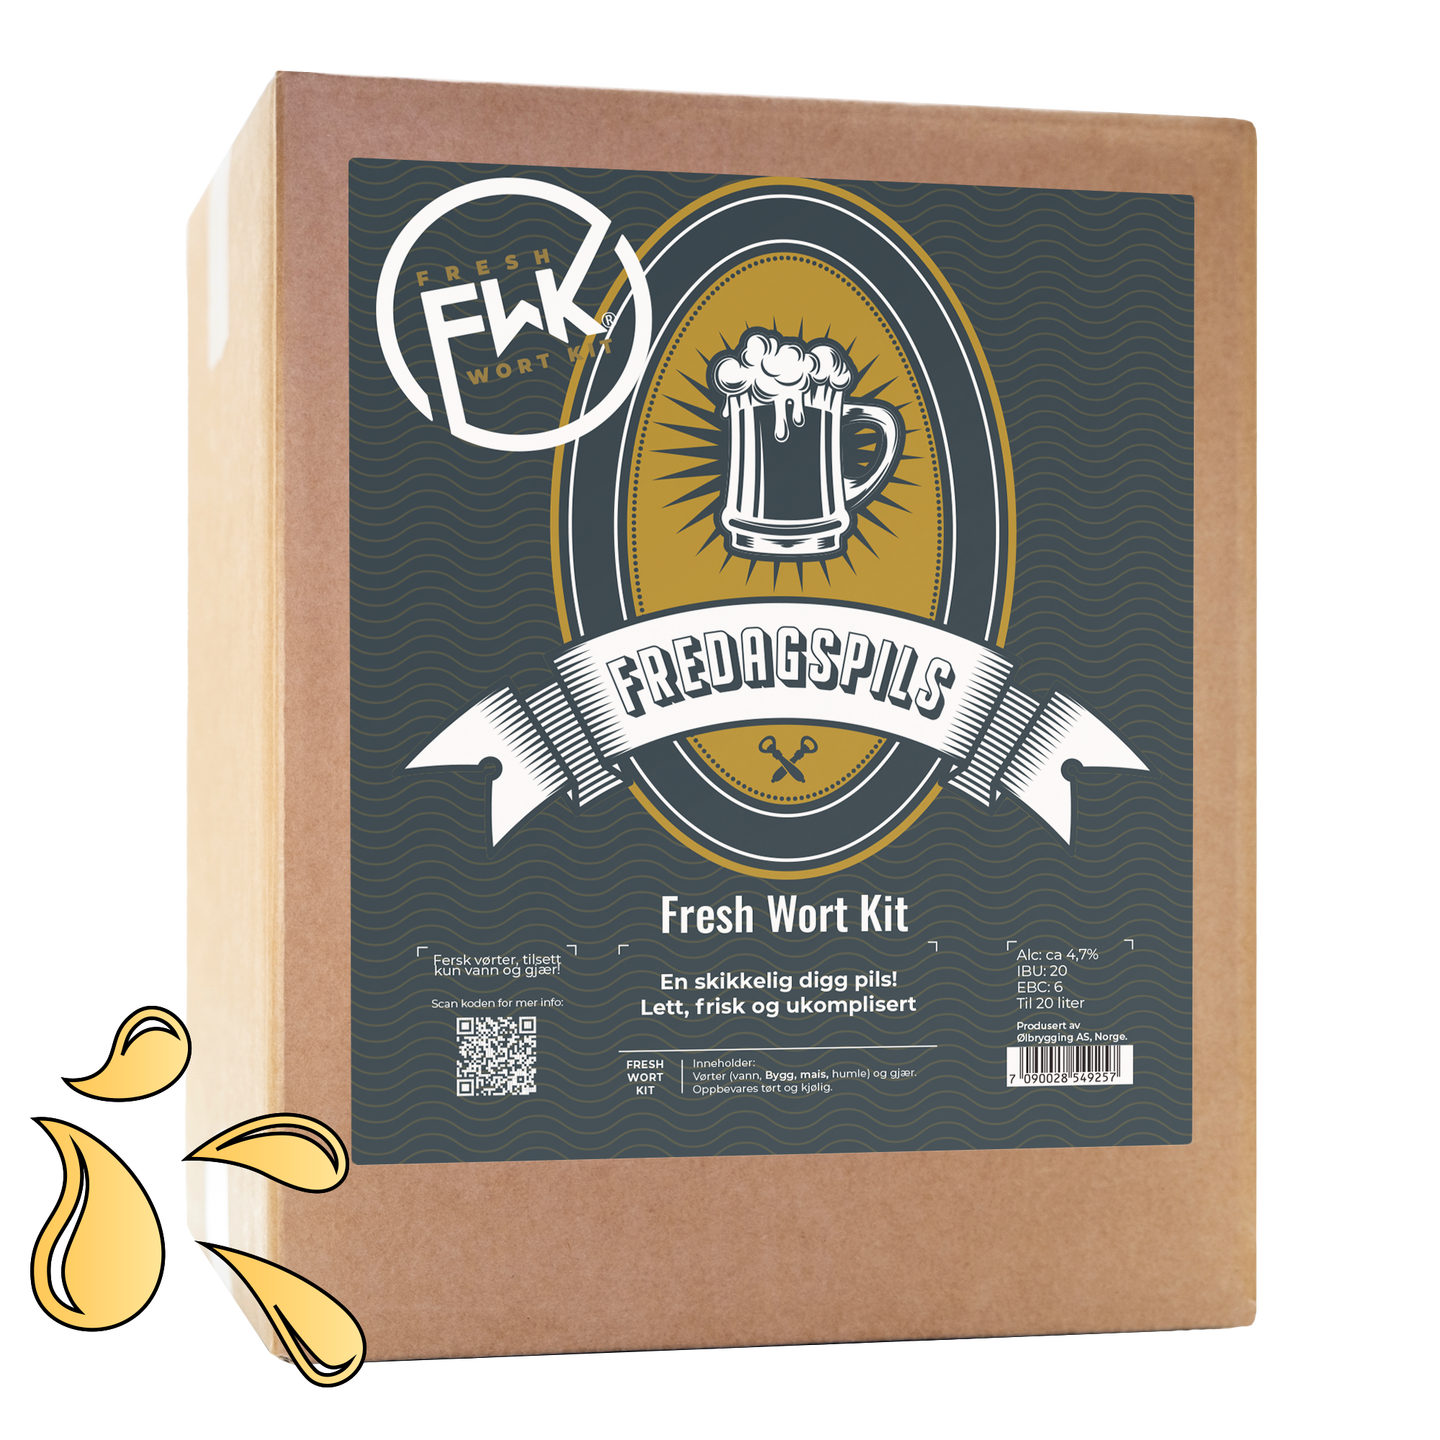 Fredagspils Fresh Wort Kit